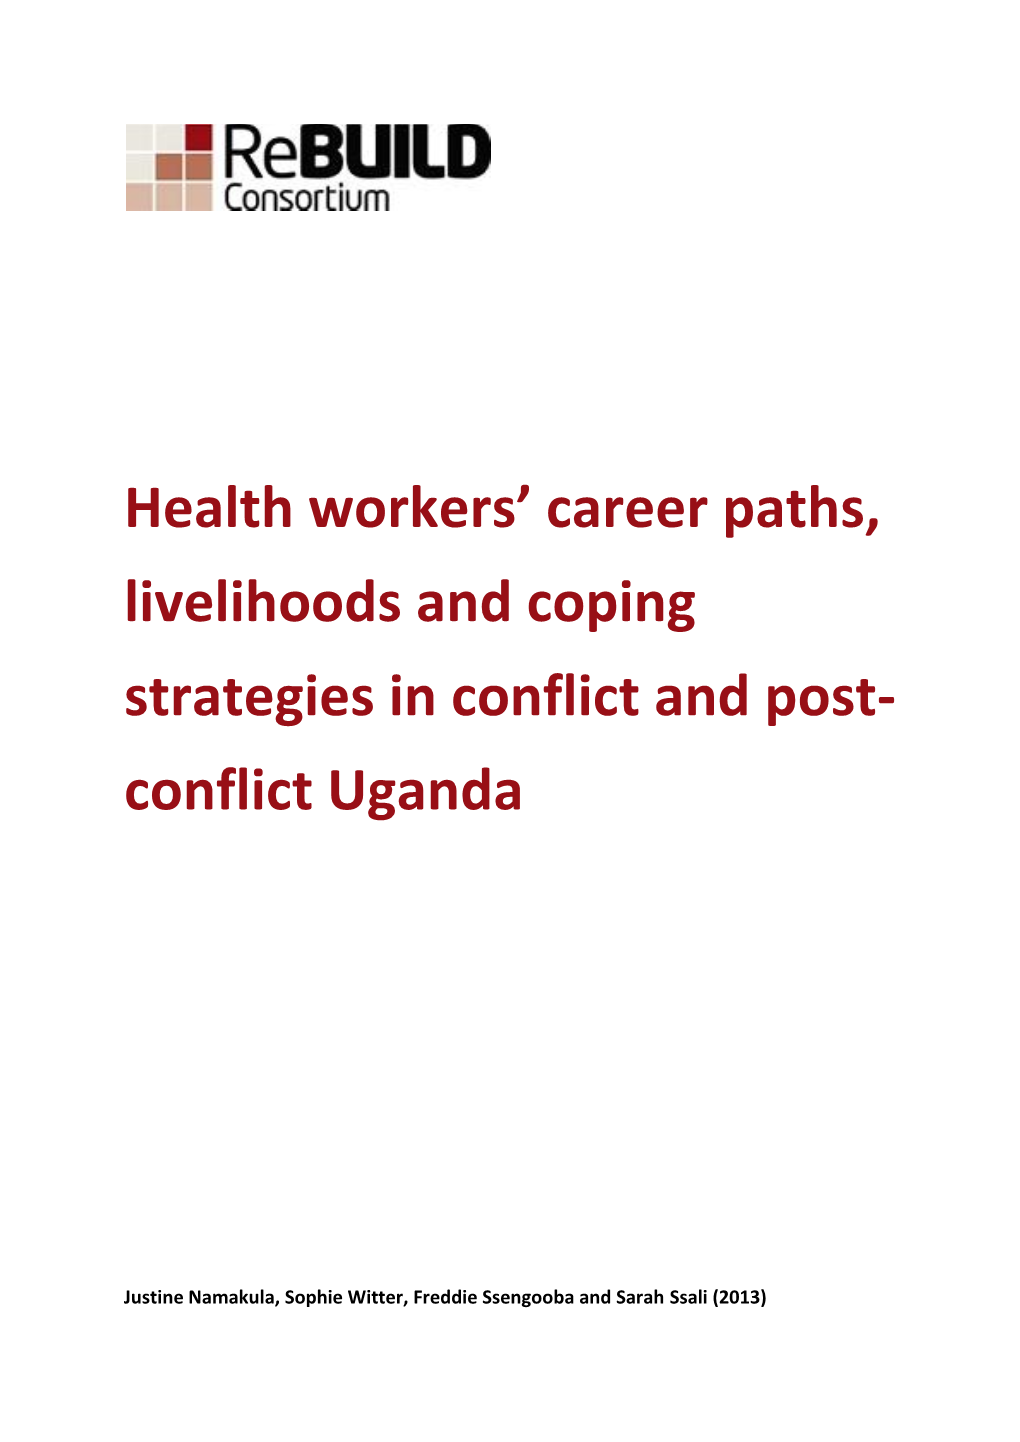 Conflict Uganda